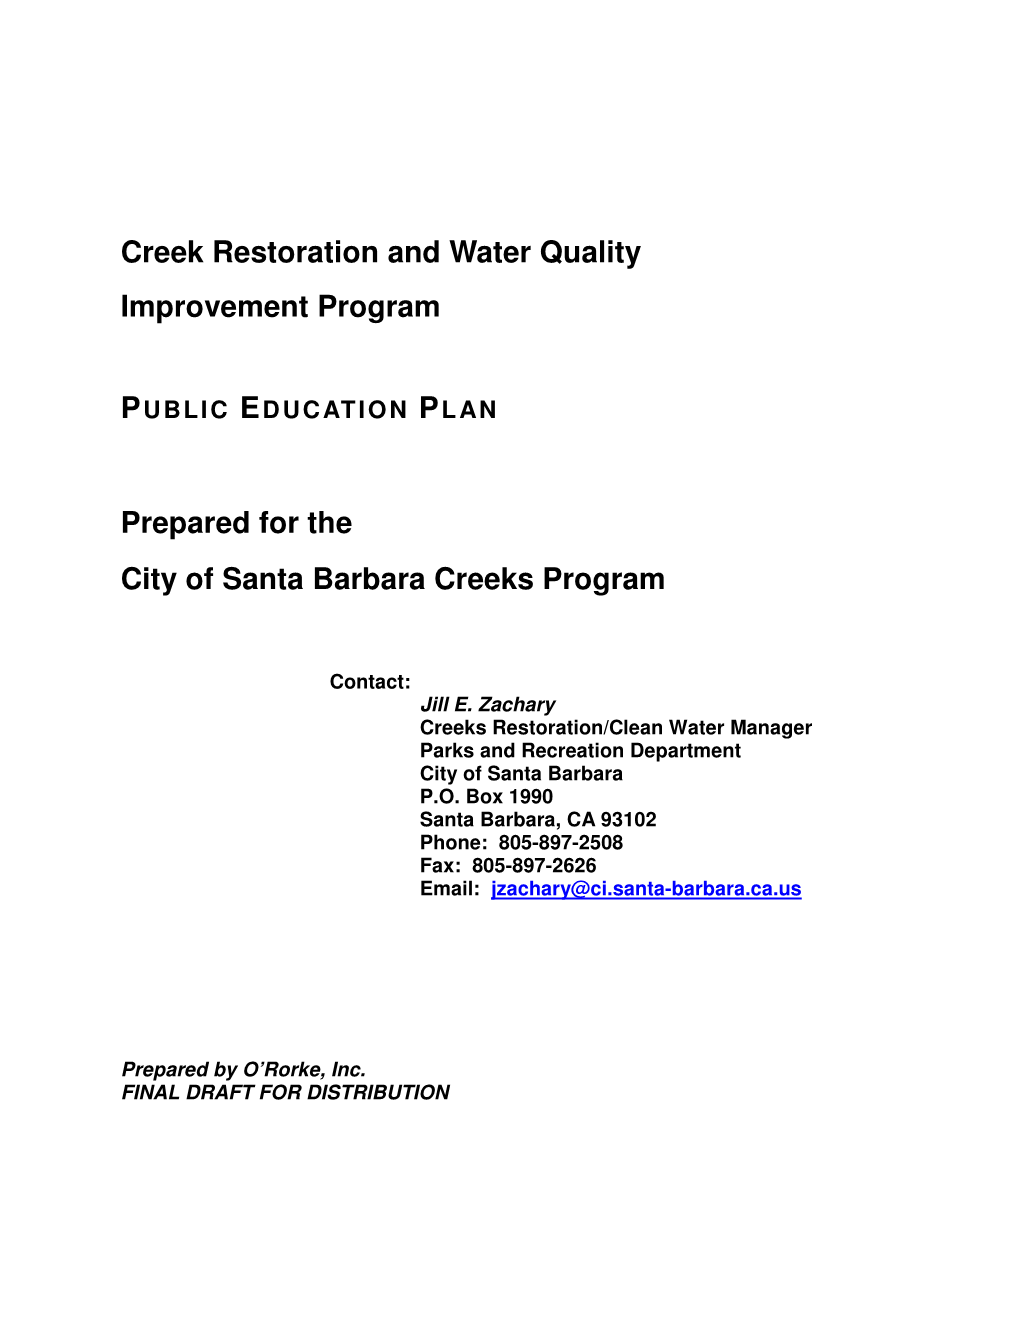 Public Education Plan, O'rorke, Inc